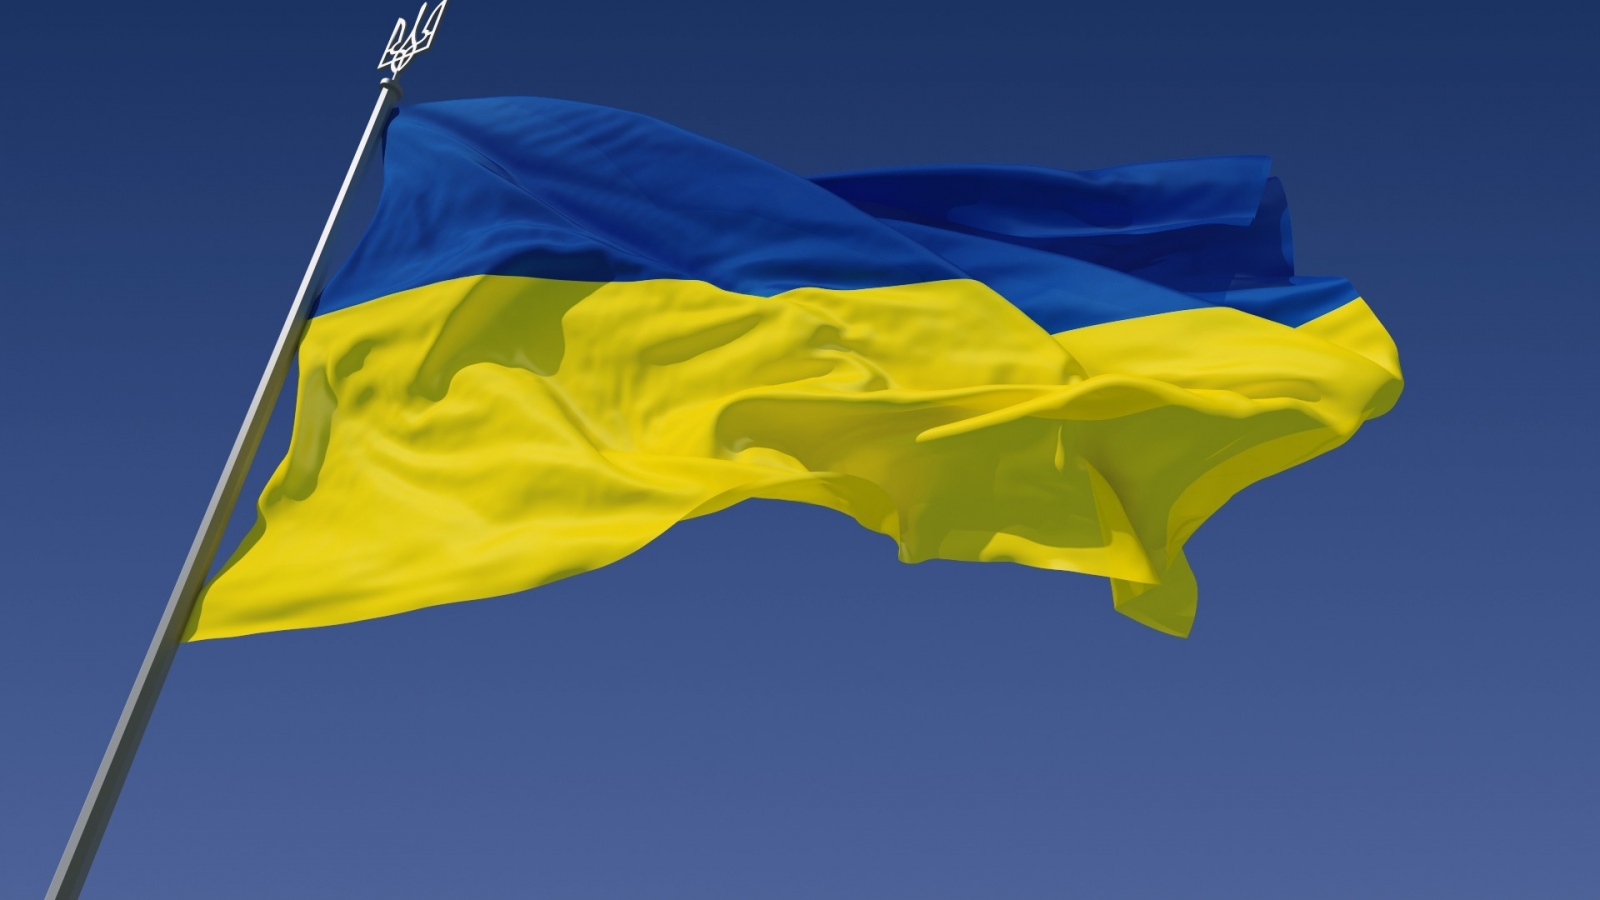 The Ukraine Flag for 1600 x 900 HDTV resolution